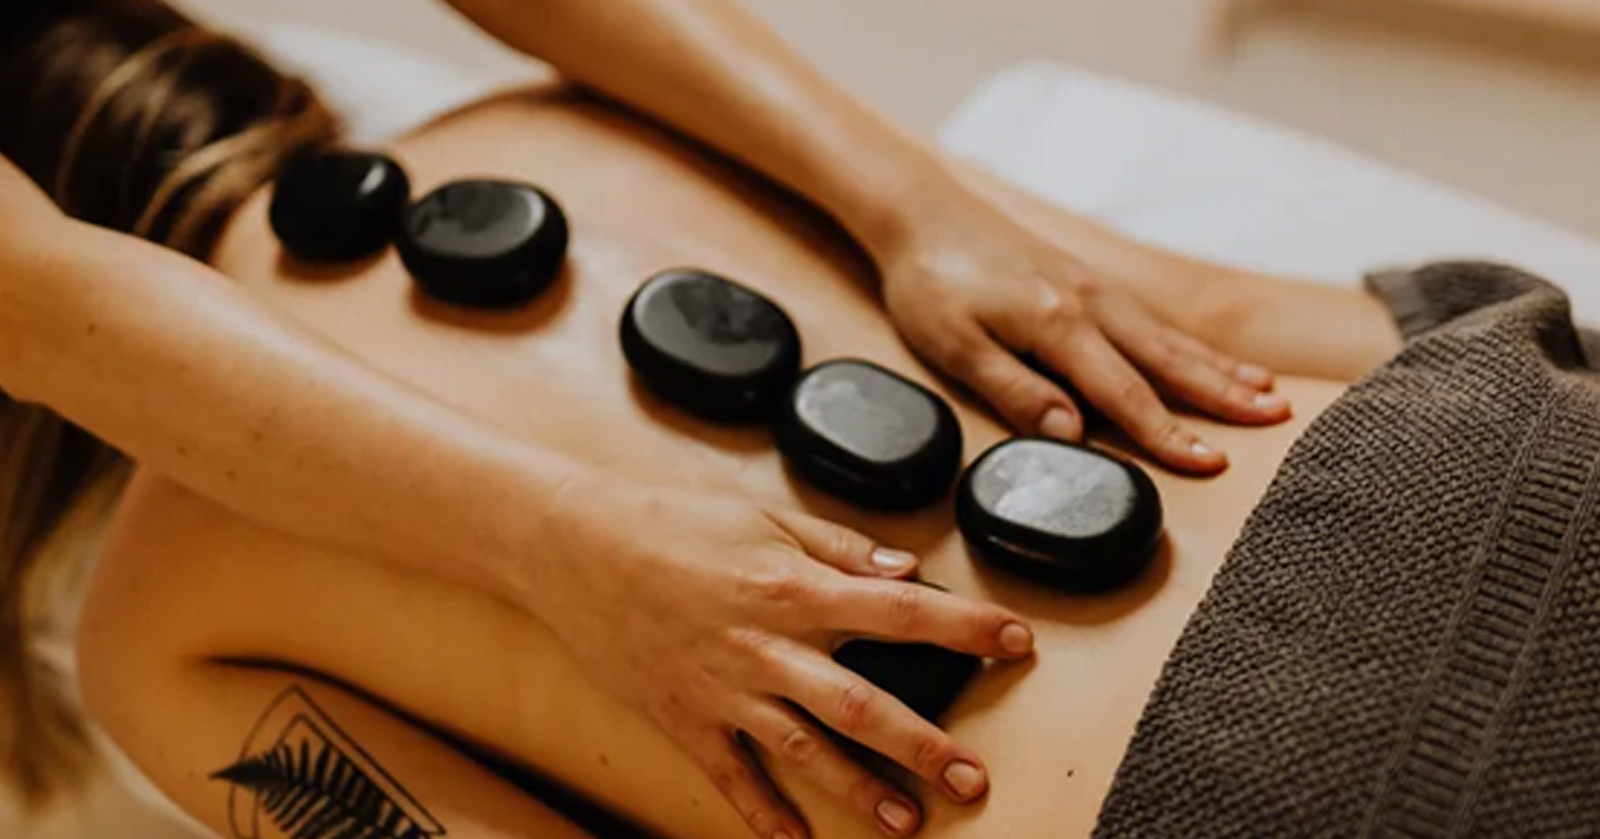 massagem pedras quentes massagem rj terapeutas rj massoterapeutas rj